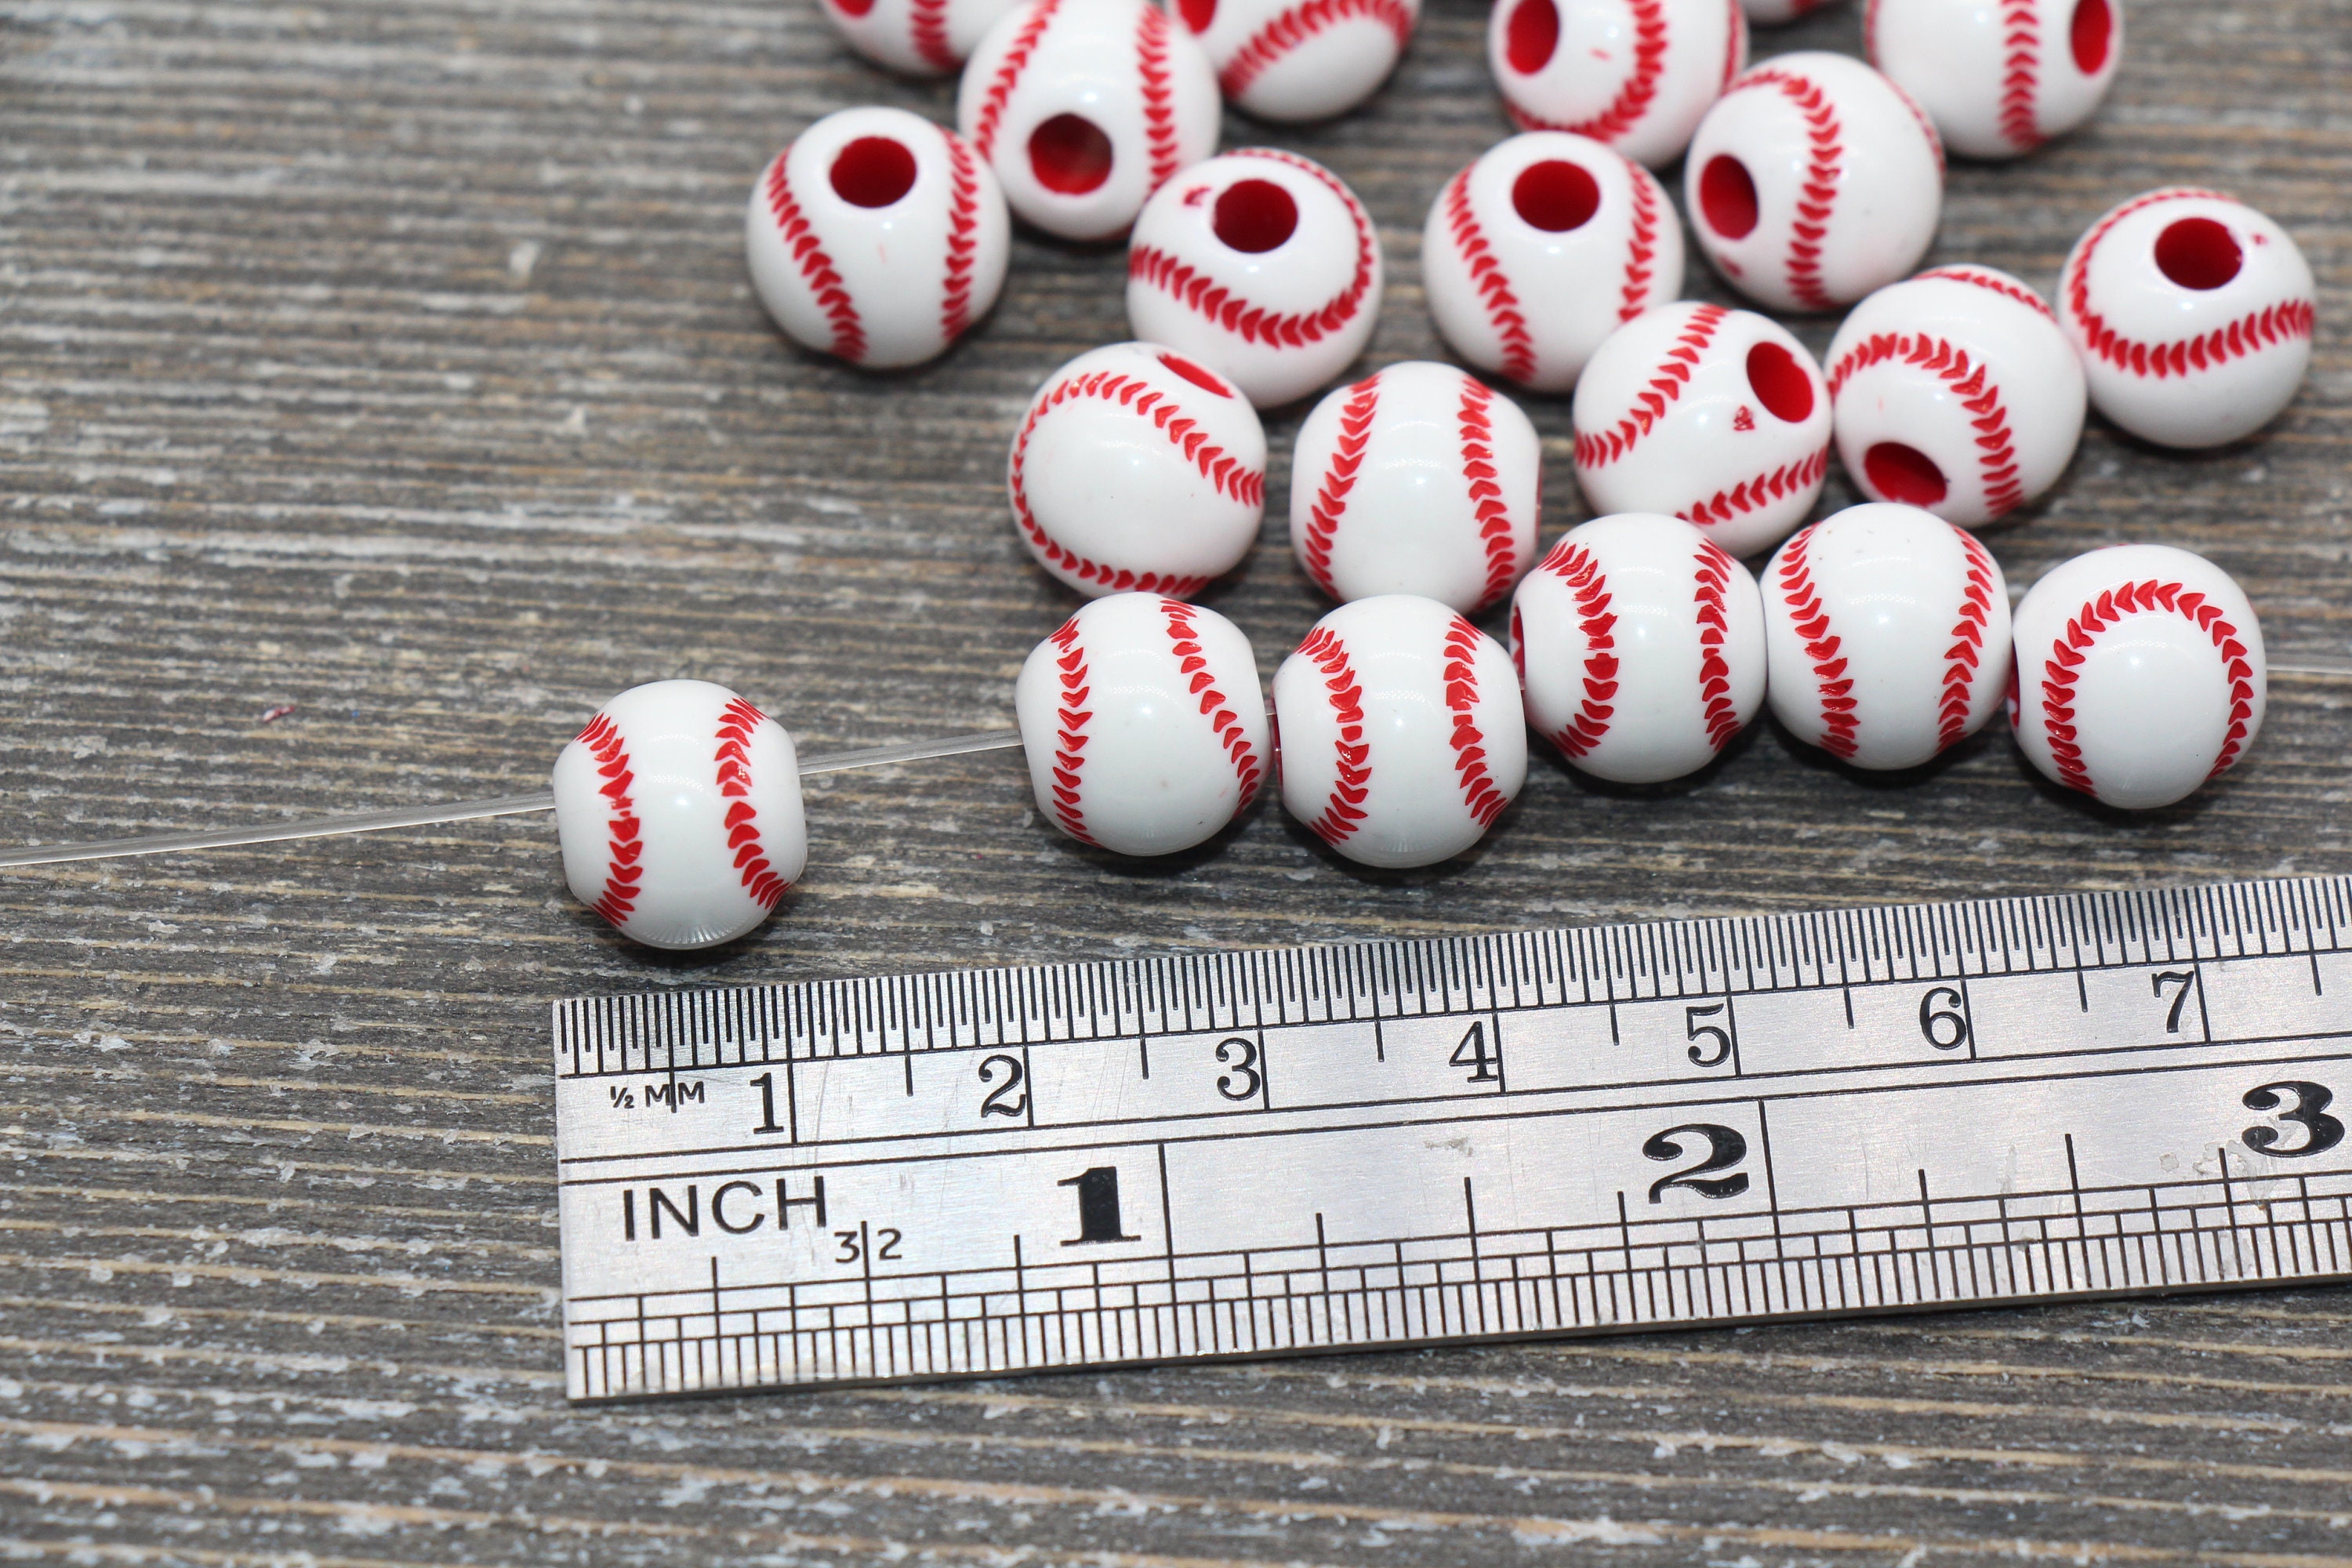 24 Pcs Baseball Shaped Beads White Red Round Beads Kids Sports